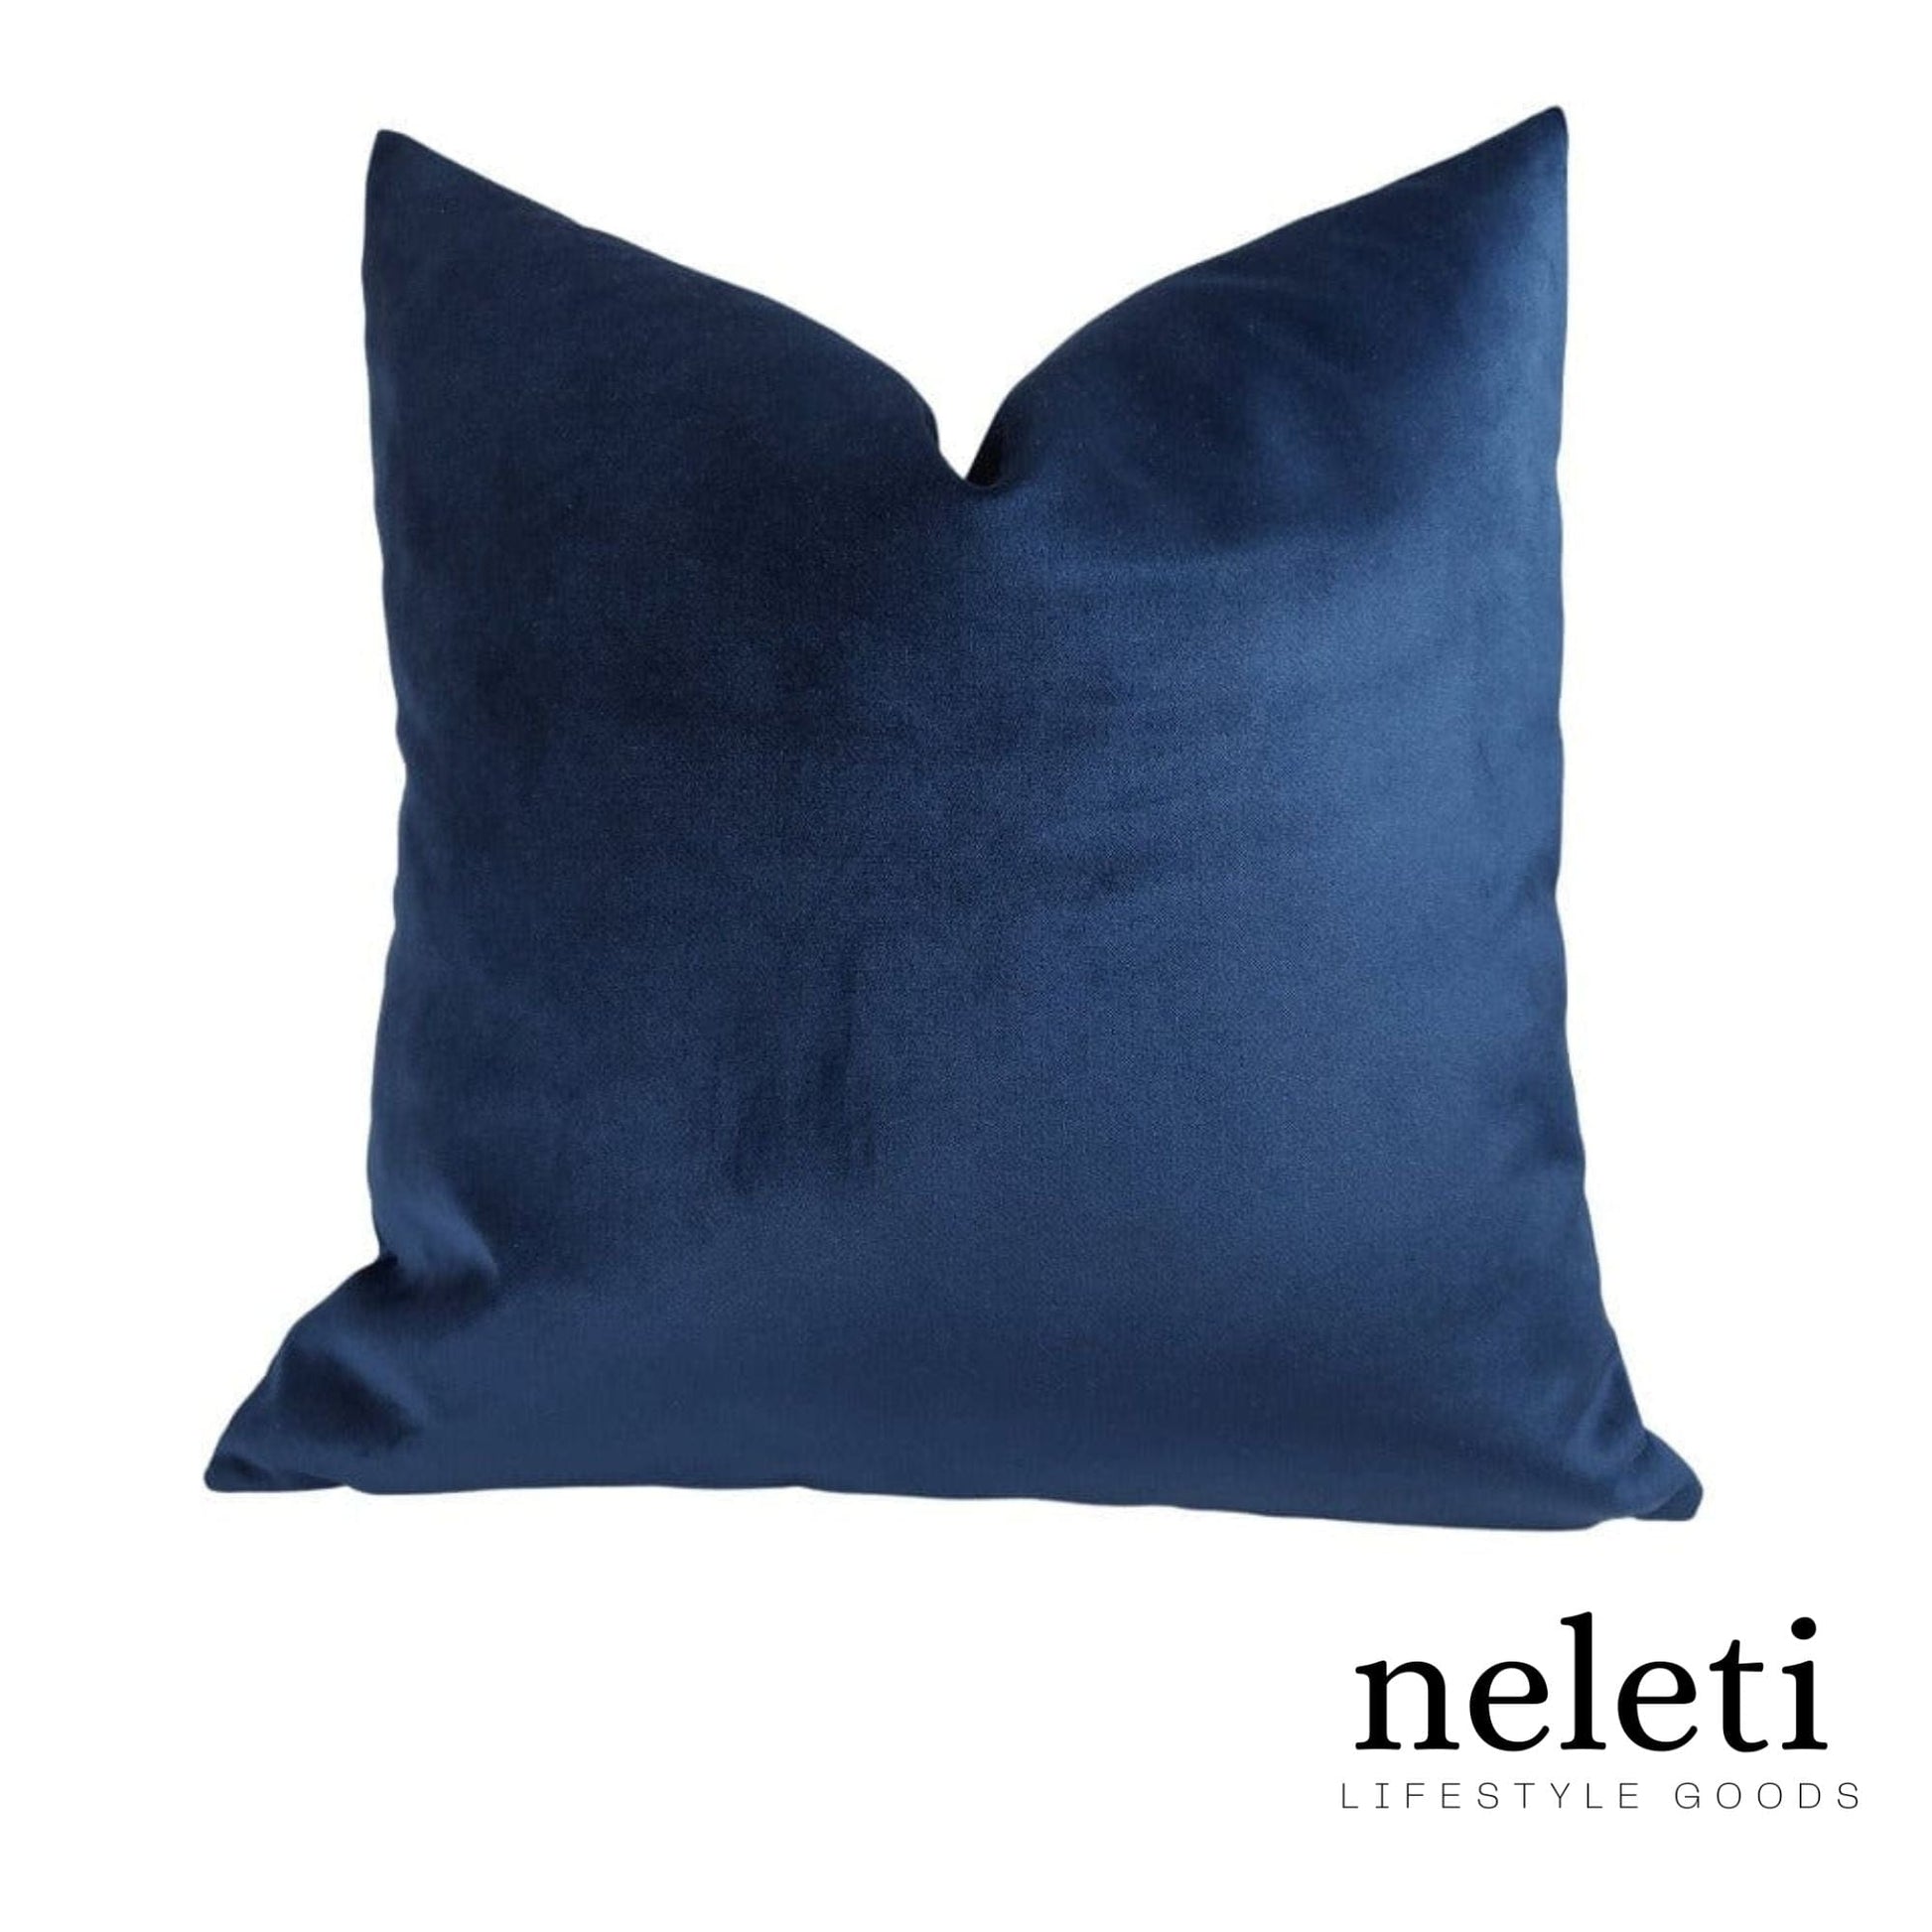 neleti.com-blue-velvet-pillow-cover